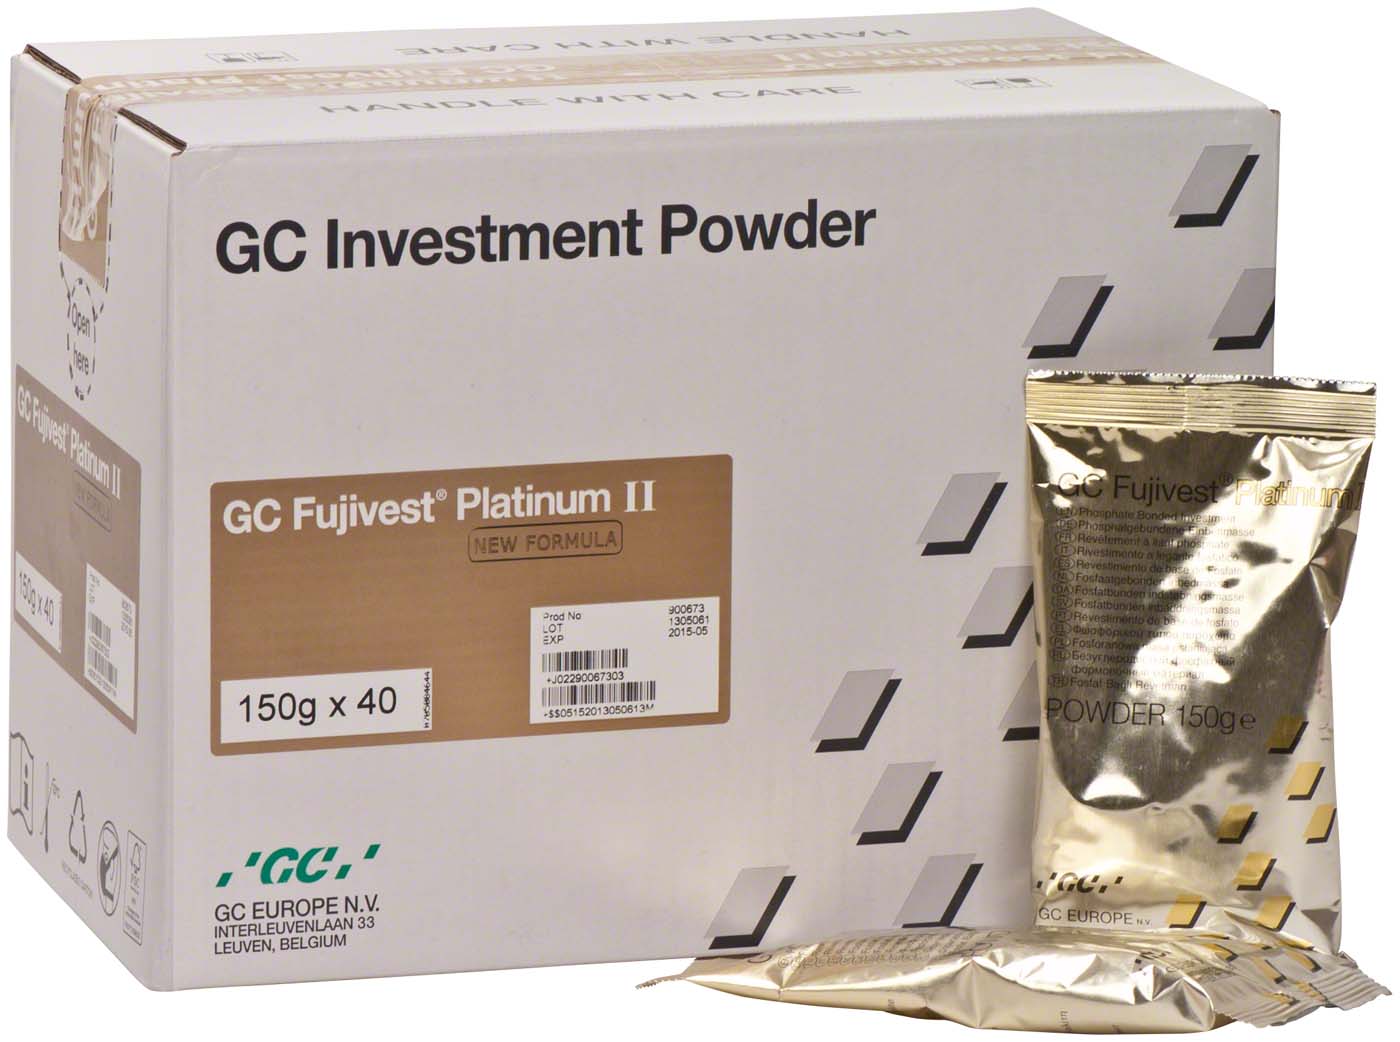 GC Fujivest® Platinum II GC